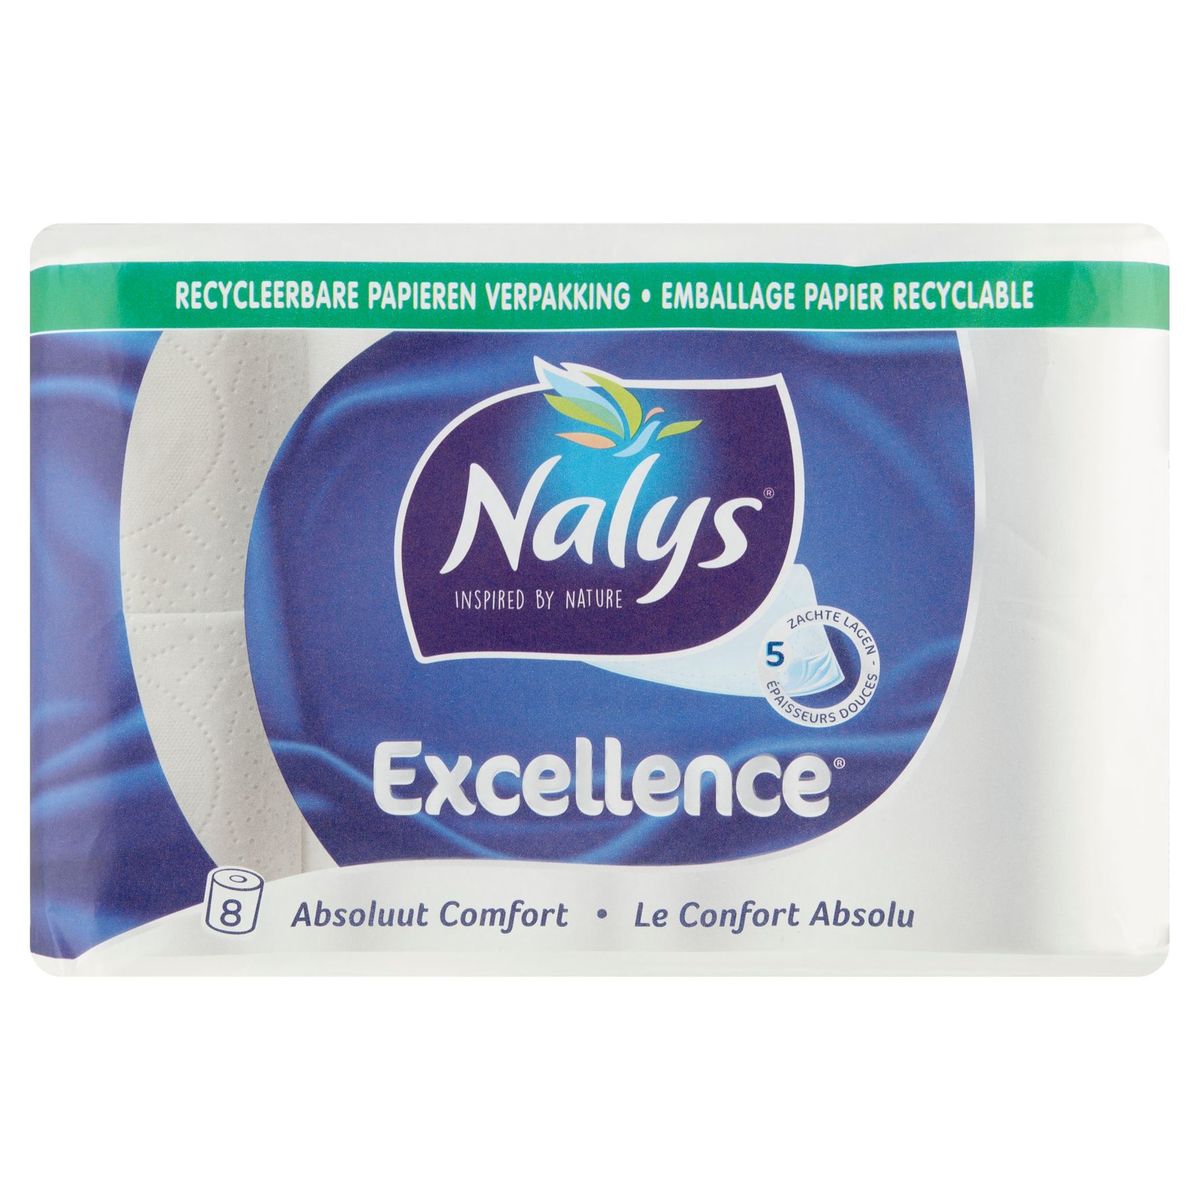 Nalys Excellence 5 Épaisseurs Douces papier toilette 8 Rouleaux